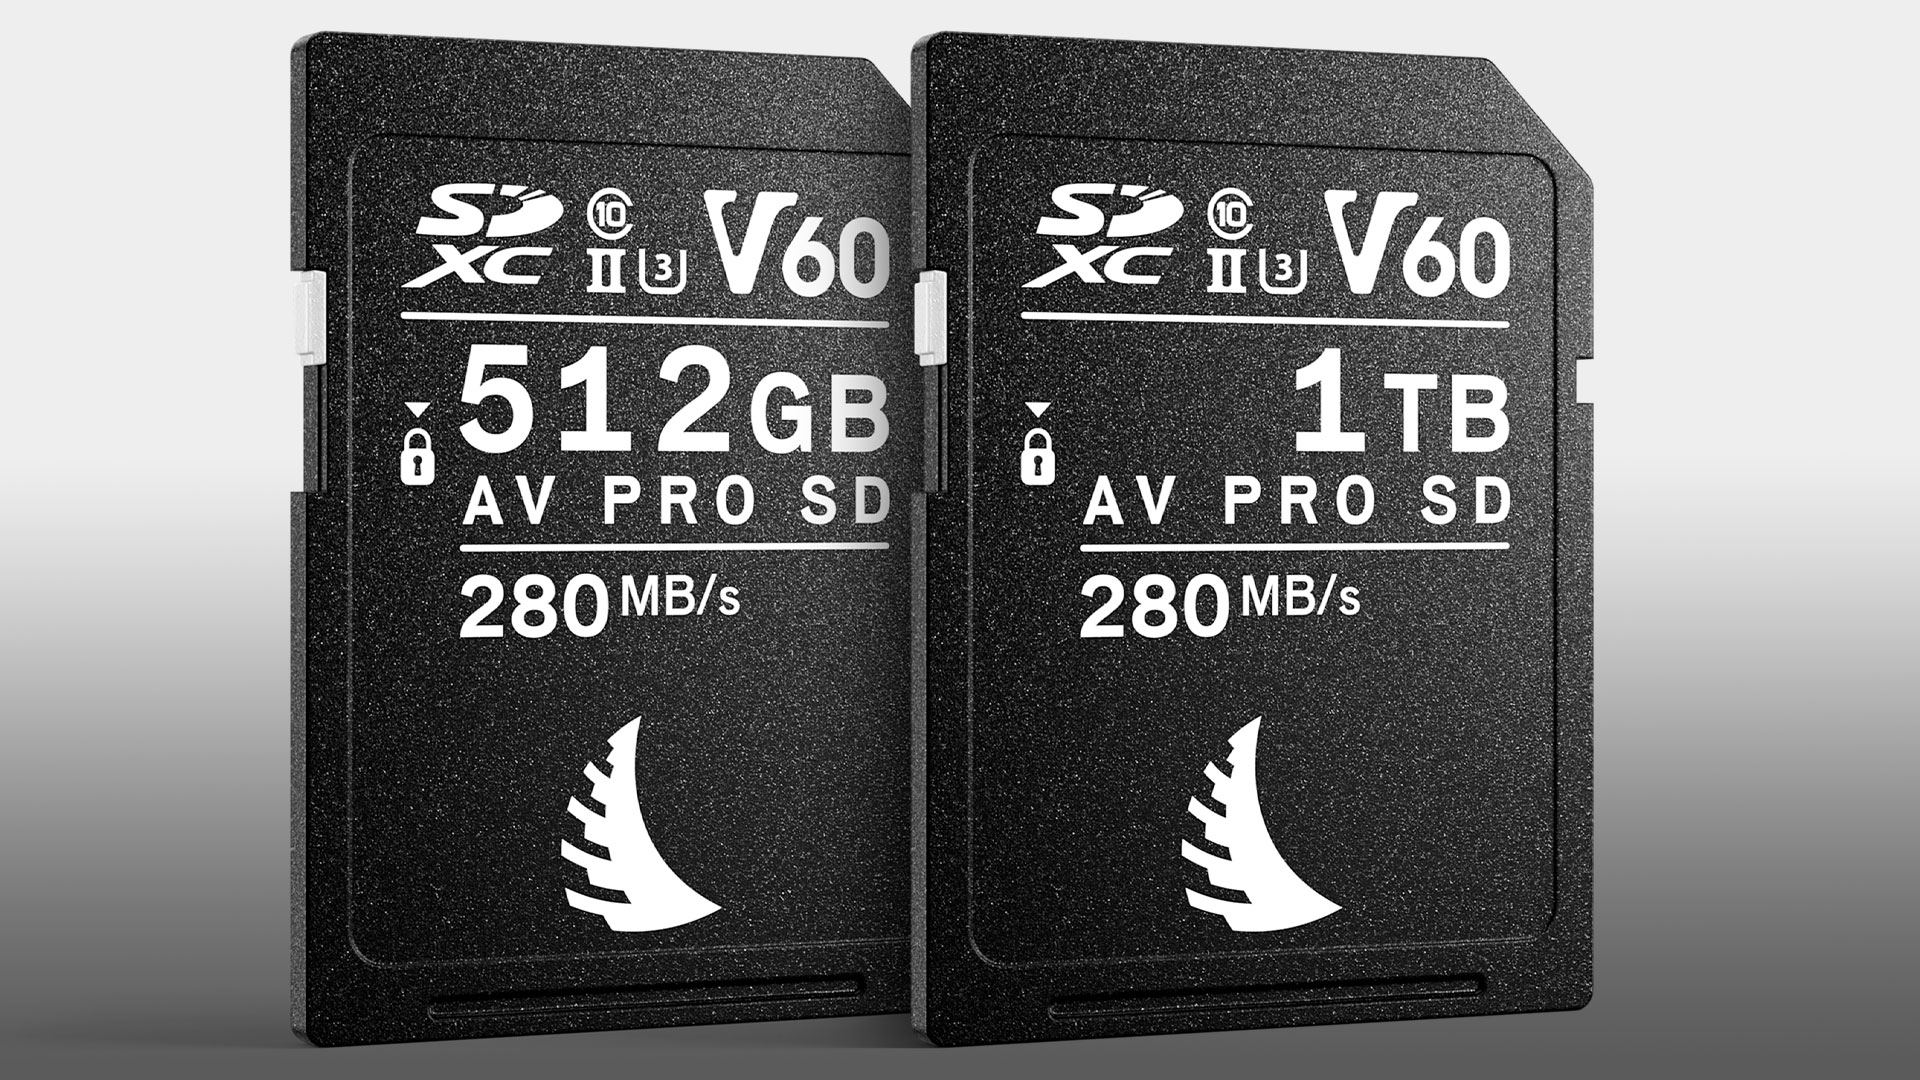 Angelbird AVpro SDXC UHS-II V90 MK2 64GB carte SD pour camé